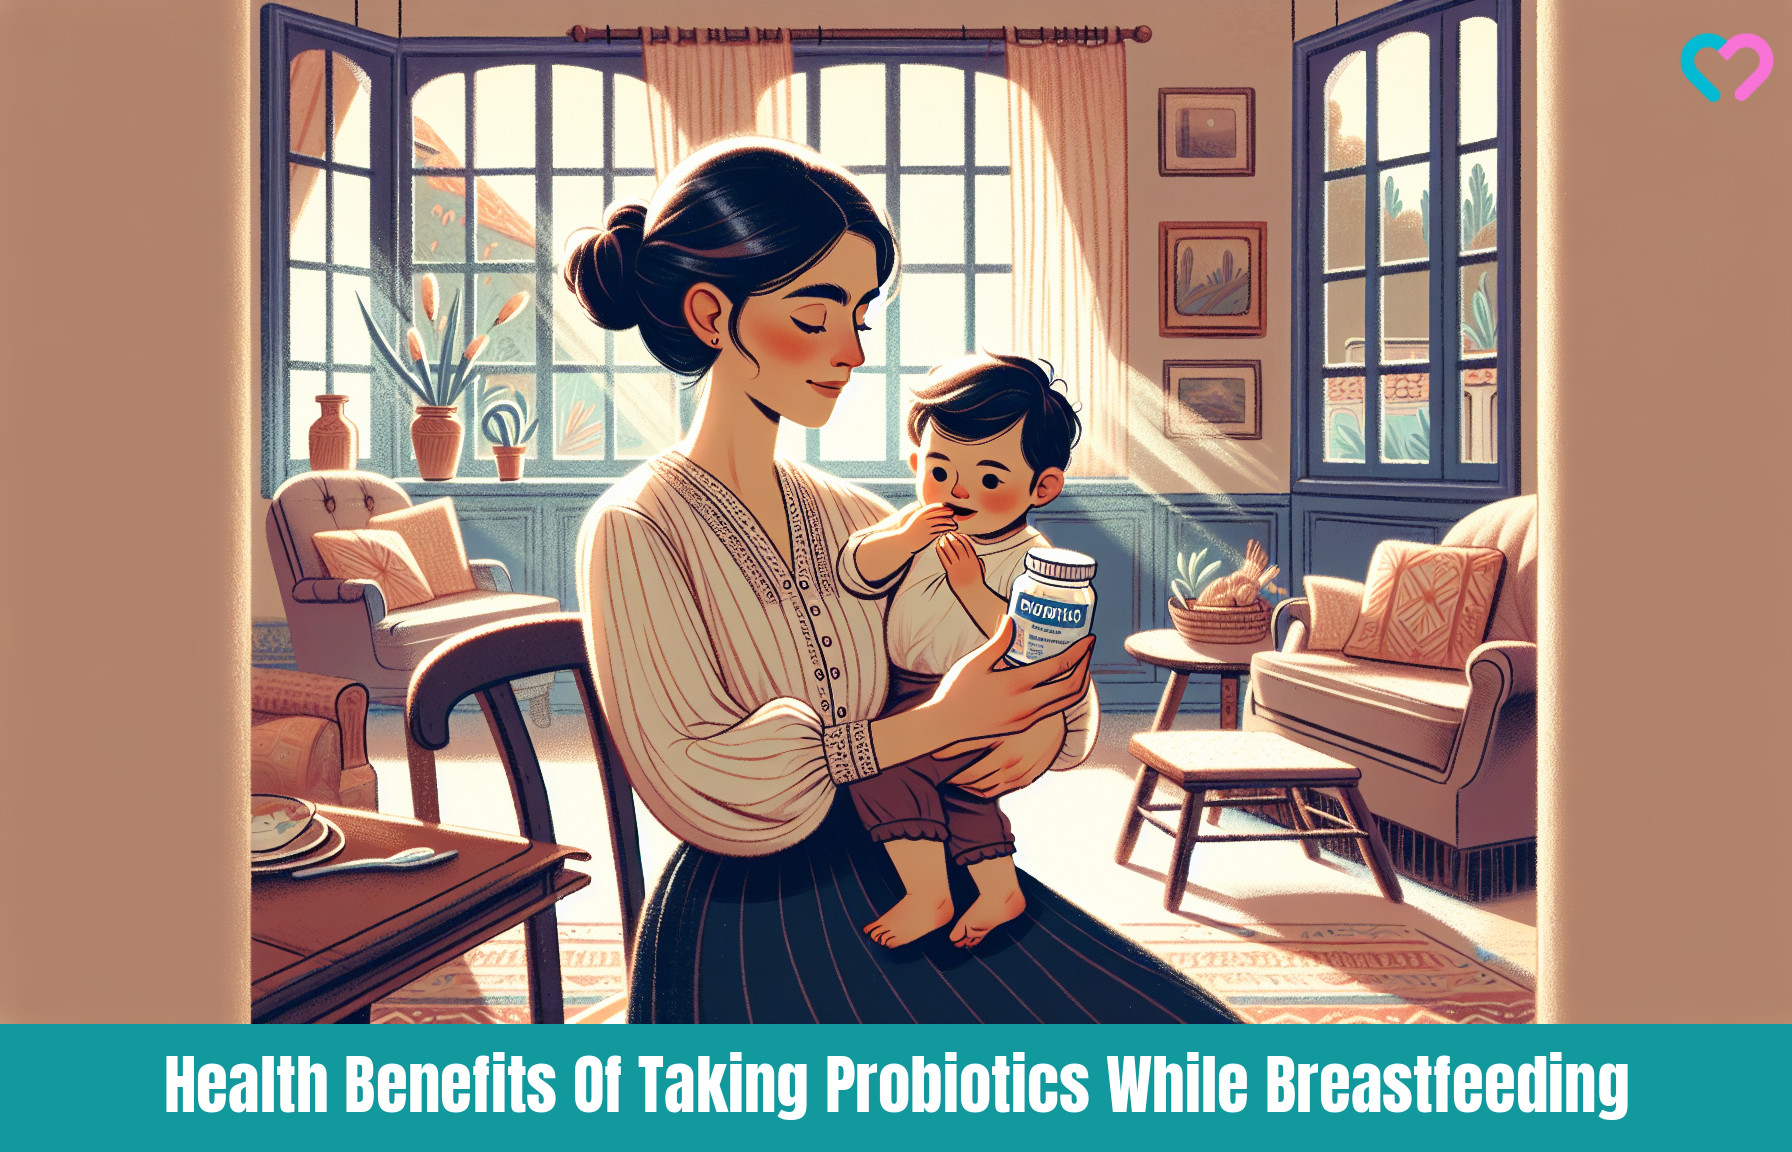 Probiotics For Breastfeeding_illustration